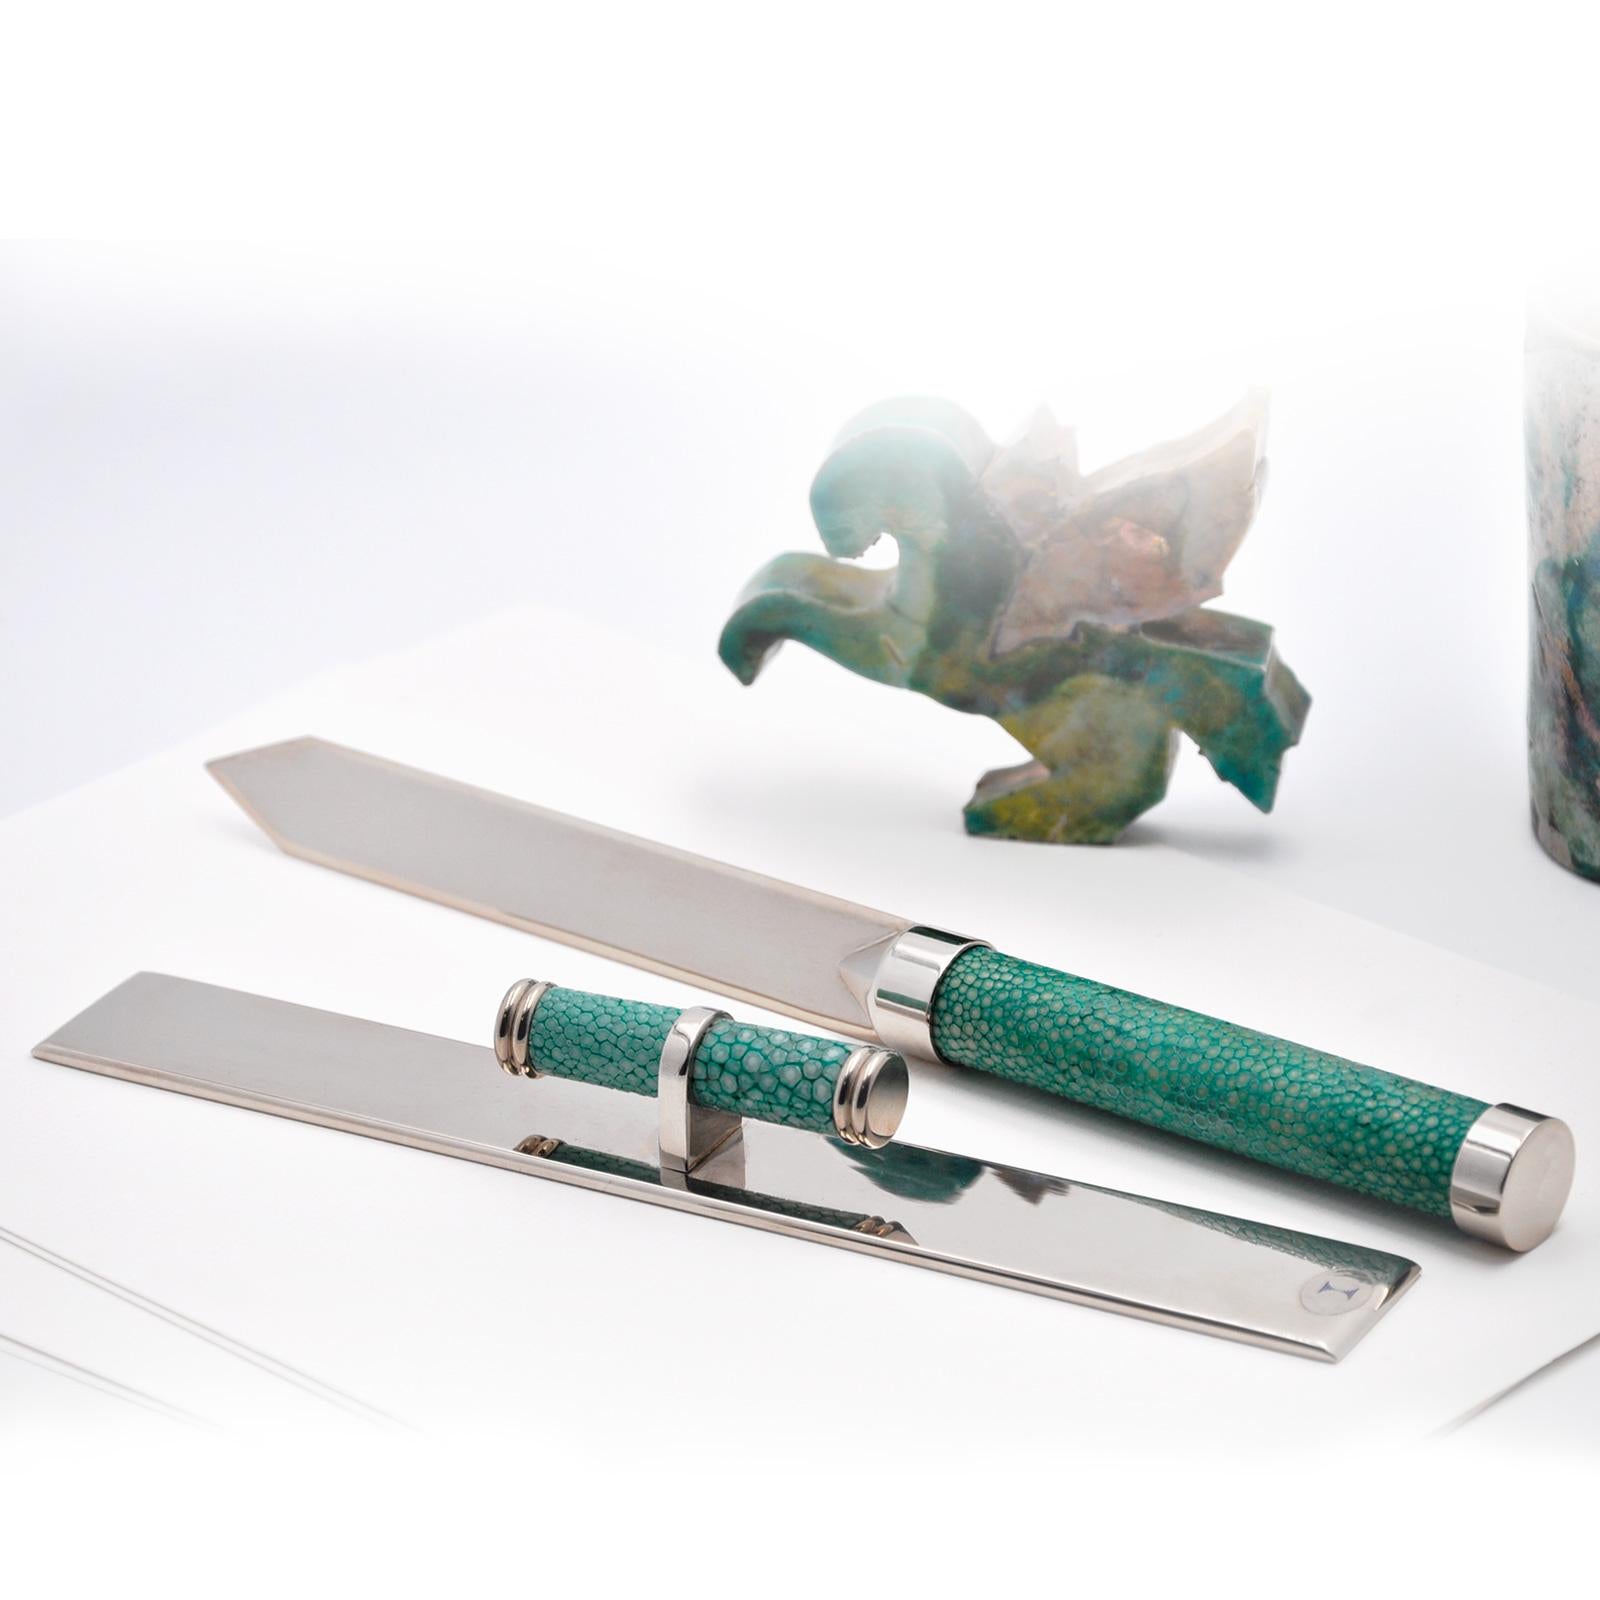 Polished SET TAGLIACARTE E RIGHELLO  in shagreen verde smeraldo design moderno esclusivo For Sale